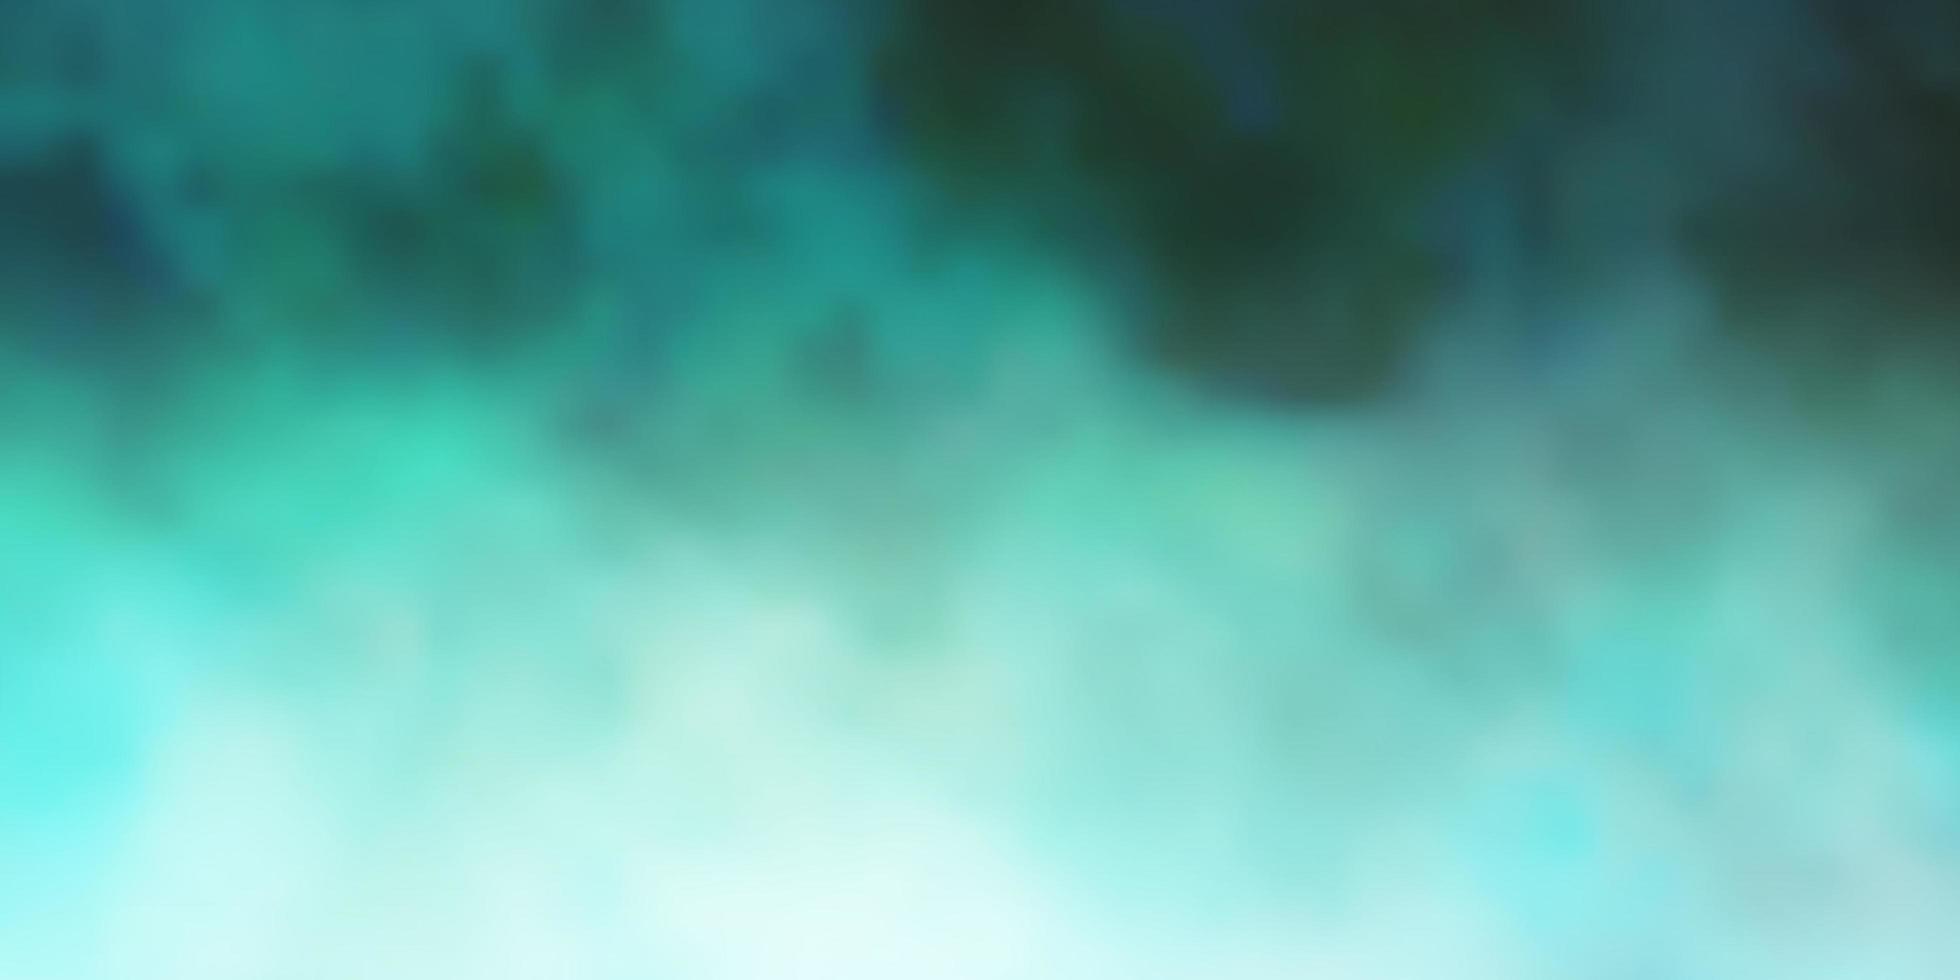 textura de vector verde azul claro con ilustración de cielo nublado en estilo abstracto con plantilla de nubes de degradado para sitios web